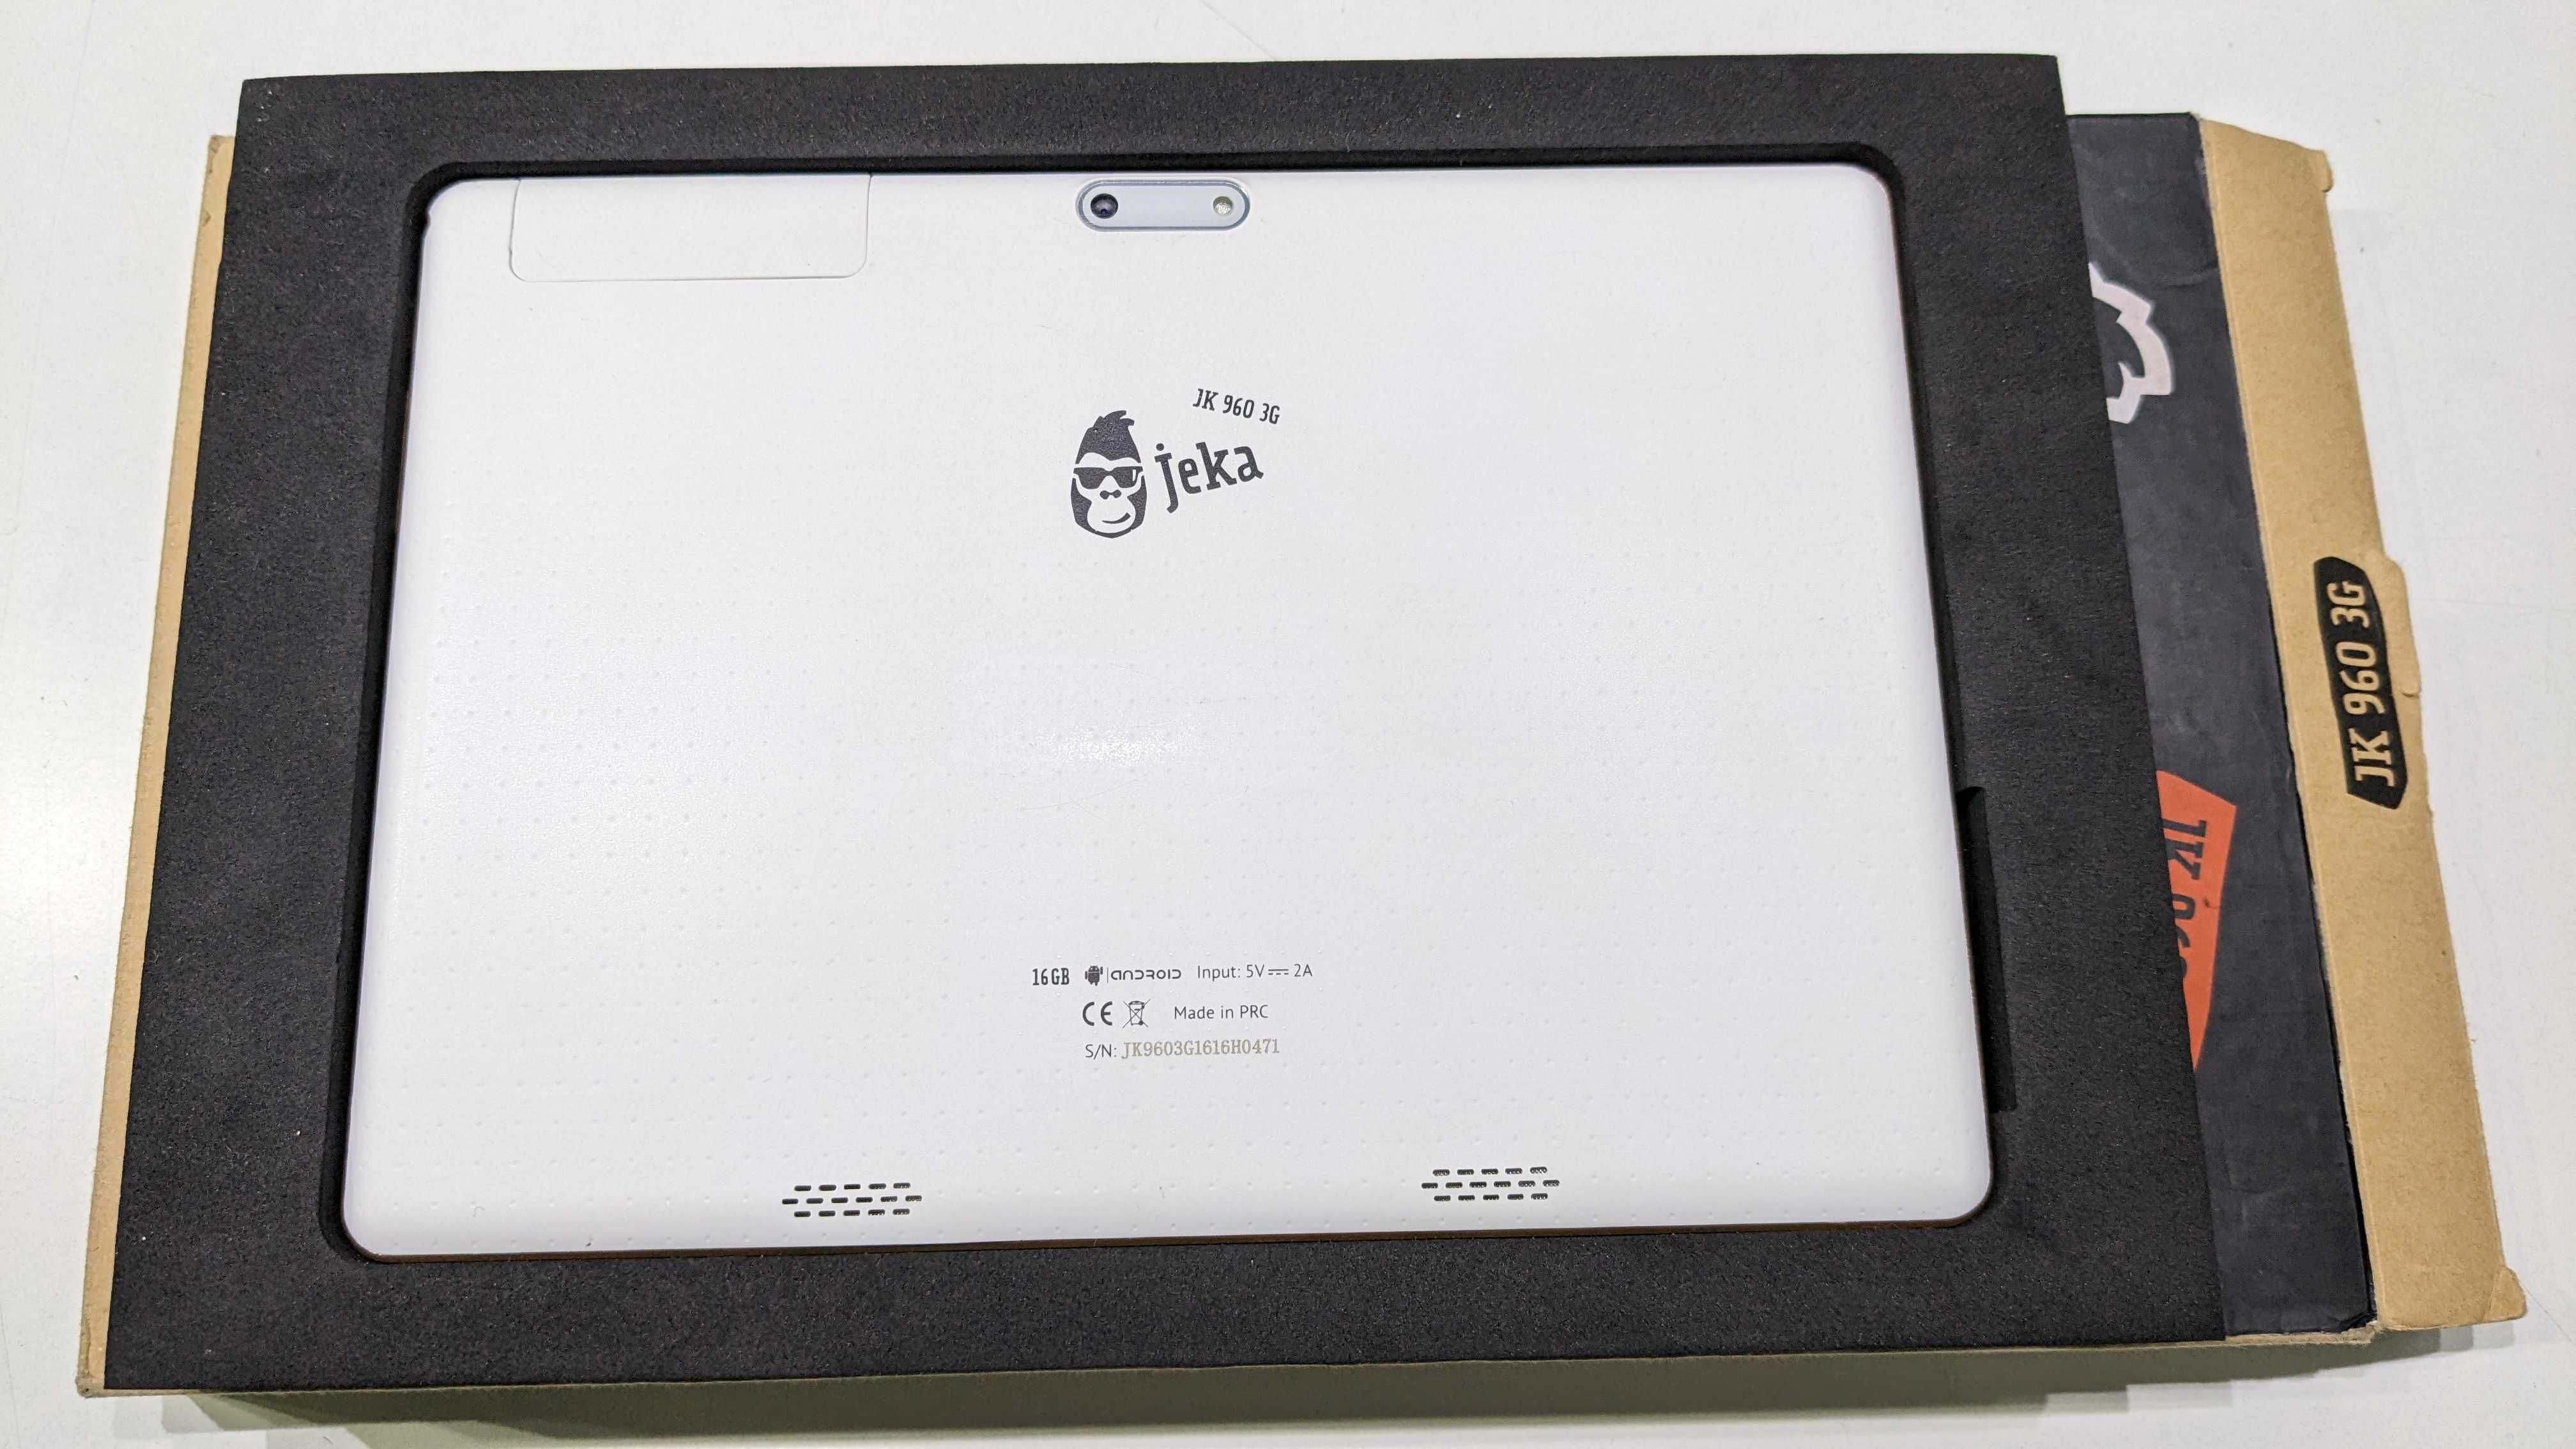 Jeka 960 9.6" 3G / Wi-Fi  Dual Sim  планшет – на запчасти